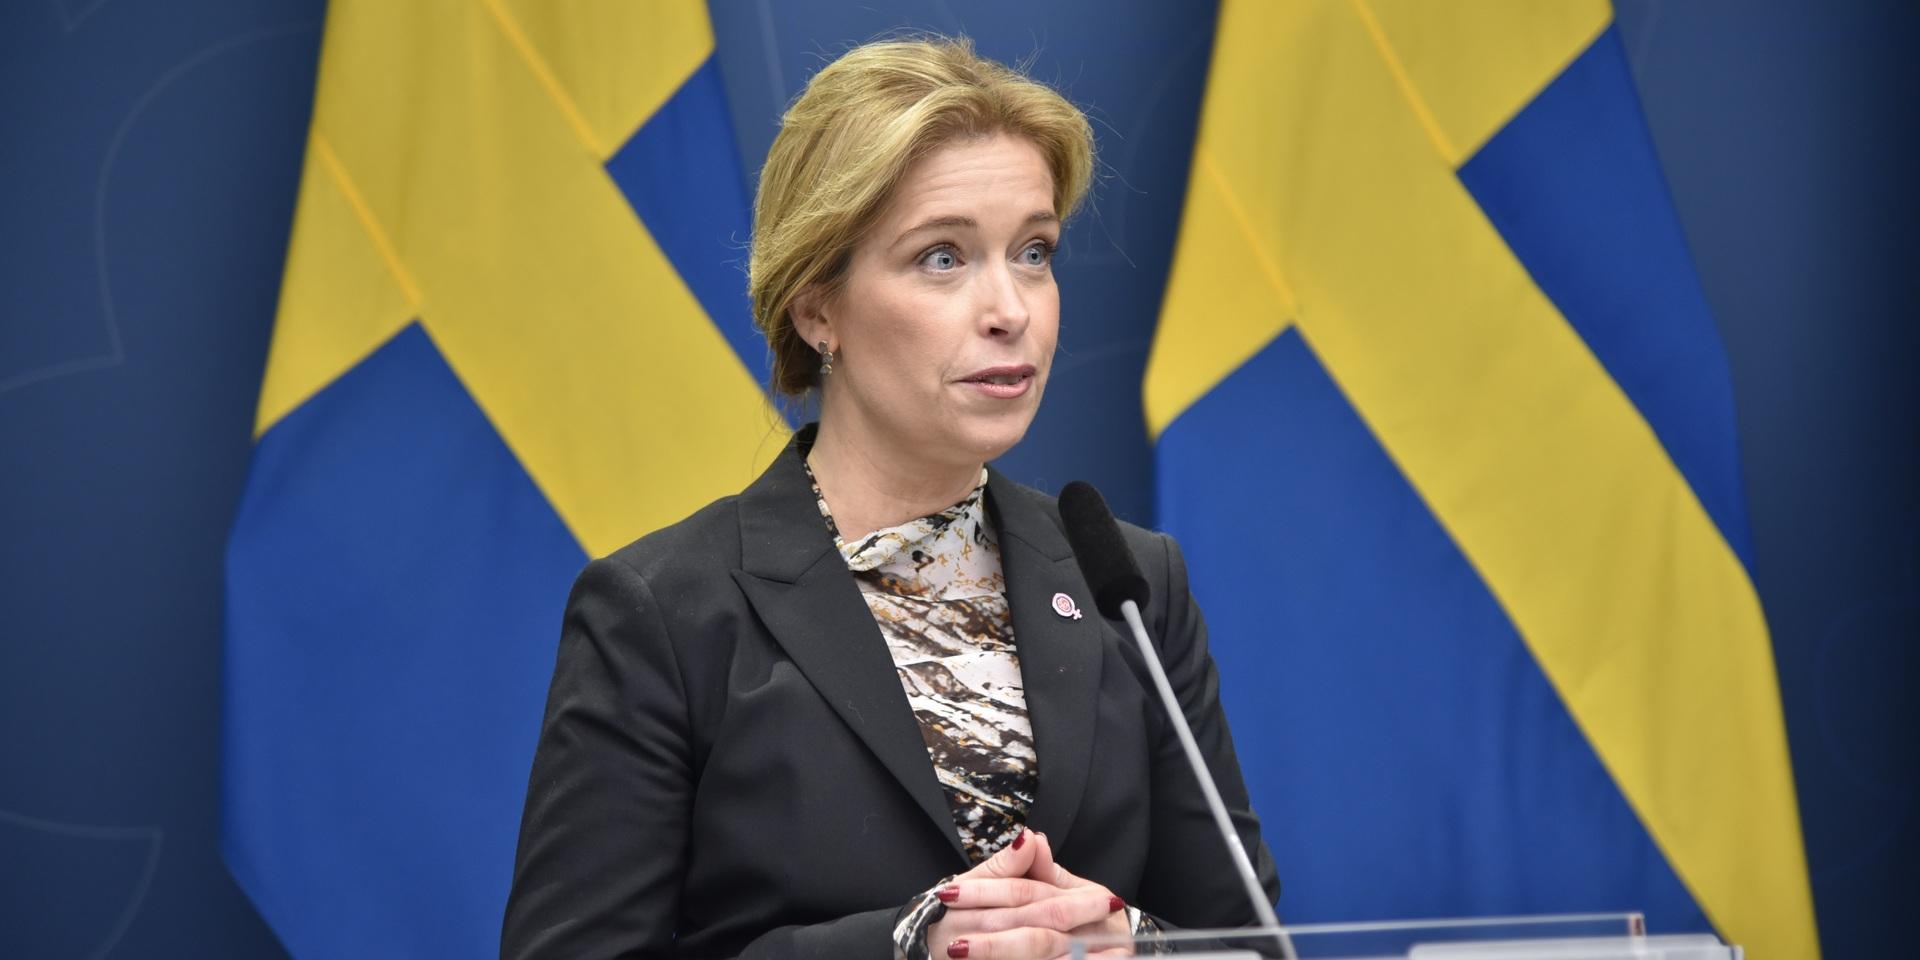 Klimat- och miljöminister Annika Strandhäll meddelar att regeringen tillåter mer kärntekniskt avfall att placeras under Östersjöns botten i Östhammars kommun. Arkivbild.